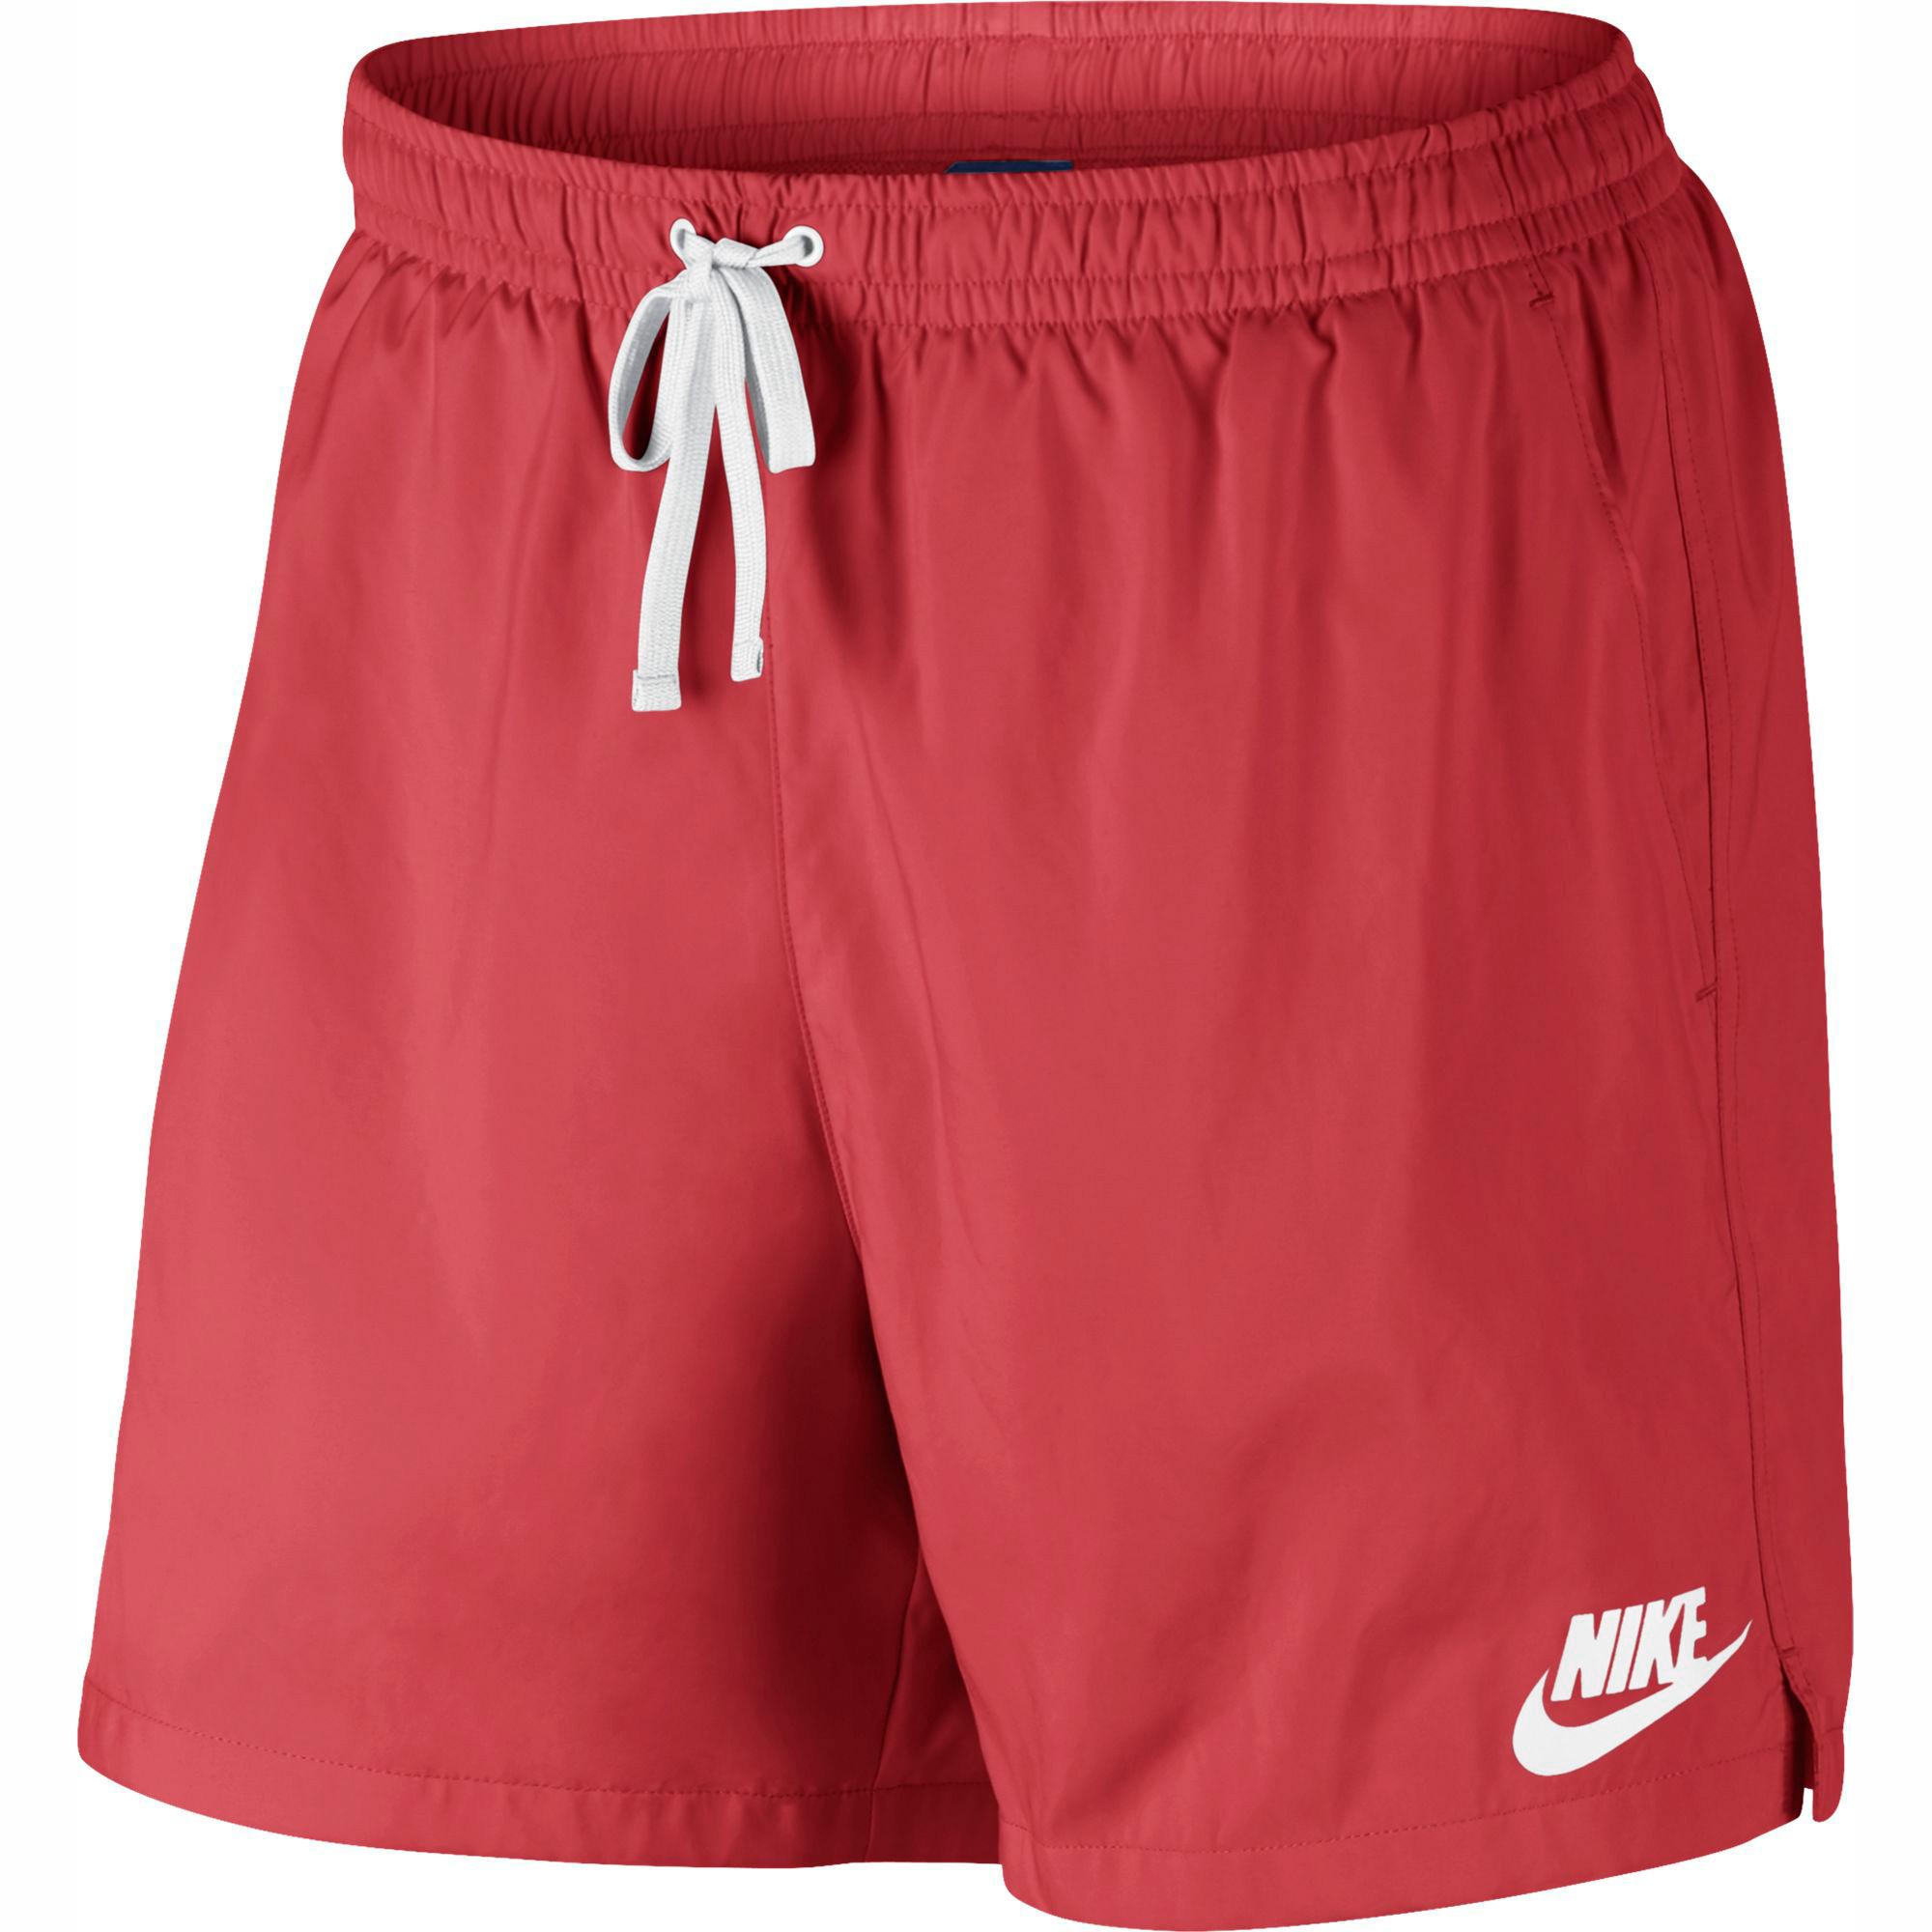 Nike Mens Sportswear Shorts - Track Red - Tennisnuts.com